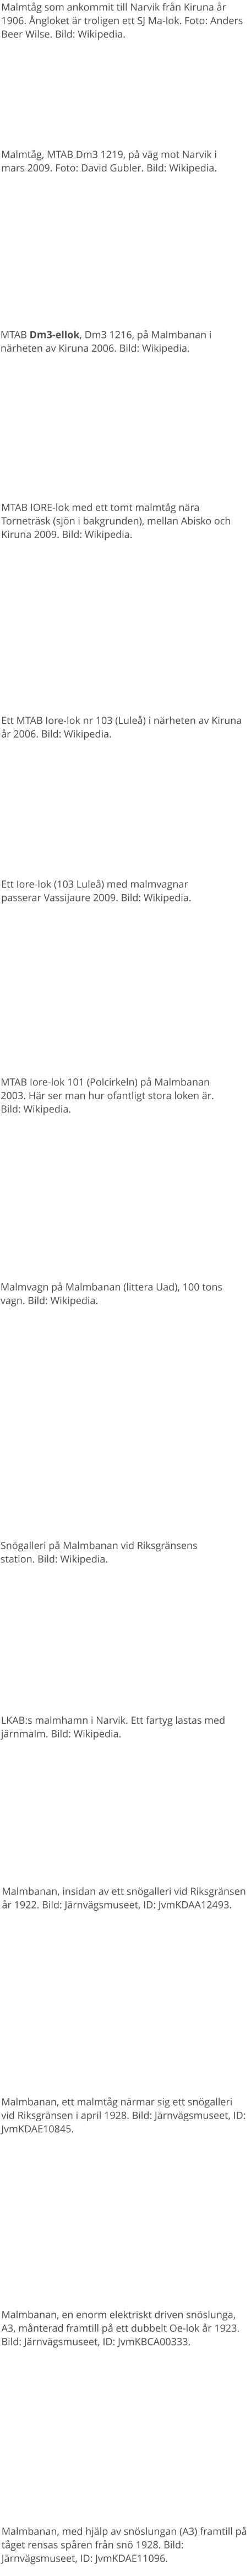 MTAB IORE-lok med ett tomt malmtåg nära Torneträsk (sjön i bakgrunden), mellan Abisko och Kiruna 2009. Bild: Wikipedia. MTAB Dm3-ellok, Dm3 1216, på Malmbanan i närheten av Kiruna 2006. Bild: Wikipedia. MTAB Iore-lok 101 (Polcirkeln) på Malmbanan 2003. Här ser man hur ofantligt stora loken är. Bild: Wikipedia. Malmvagn på Malmbanan (littera Uad), 100 tons vagn. Bild: Wikipedia. Snögalleri på Malmbanan vid Riksgränsens station. Bild: Wikipedia. LKAB:s malmhamn i Narvik. Ett fartyg lastas med järnmalm. Bild: Wikipedia. Malmtåg som ankommit till Narvik från Kiruna år 1906. Ångloket är troligen ett SJ Ma-lok. Foto: Anders Beer Wilse. Bild: Wikipedia. Malmtåg, MTAB Dm3 1219, på väg mot Narvik i mars 2009. Foto: David Gubler. Bild: Wikipedia.  Ett Iore-lok (103 Luleå) med malmvagnar passerar Vassijaure 2009. Bild: Wikipedia. Ett MTAB Iore-lok nr 103 (Luleå) i närheten av Kiruna år 2006. Bild: Wikipedia. Malmbanan, insidan av ett snögalleri vid Riksgränsen år 1922. Bild: Järnvägsmuseet, ID: JvmKDAA12493.  Malmbanan, ett malmtåg närmar sig ett snögalleri vid Riksgränsen i april 1928. Bild: Järnvägsmuseet, ID: JvmKDAE10845.  Malmbanan, en enorm elektriskt driven snöslunga, A3, månterad framtill på ett dubbelt Oe-lok år 1923. Bild: Järnvägsmuseet, ID: JvmKBCA00333.  Malmbanan, med hjälp av snöslungan (A3) framtill på tåget rensas spåren från snö 1928. Bild: Järnvägsmuseet, ID: JvmKDAE11096.